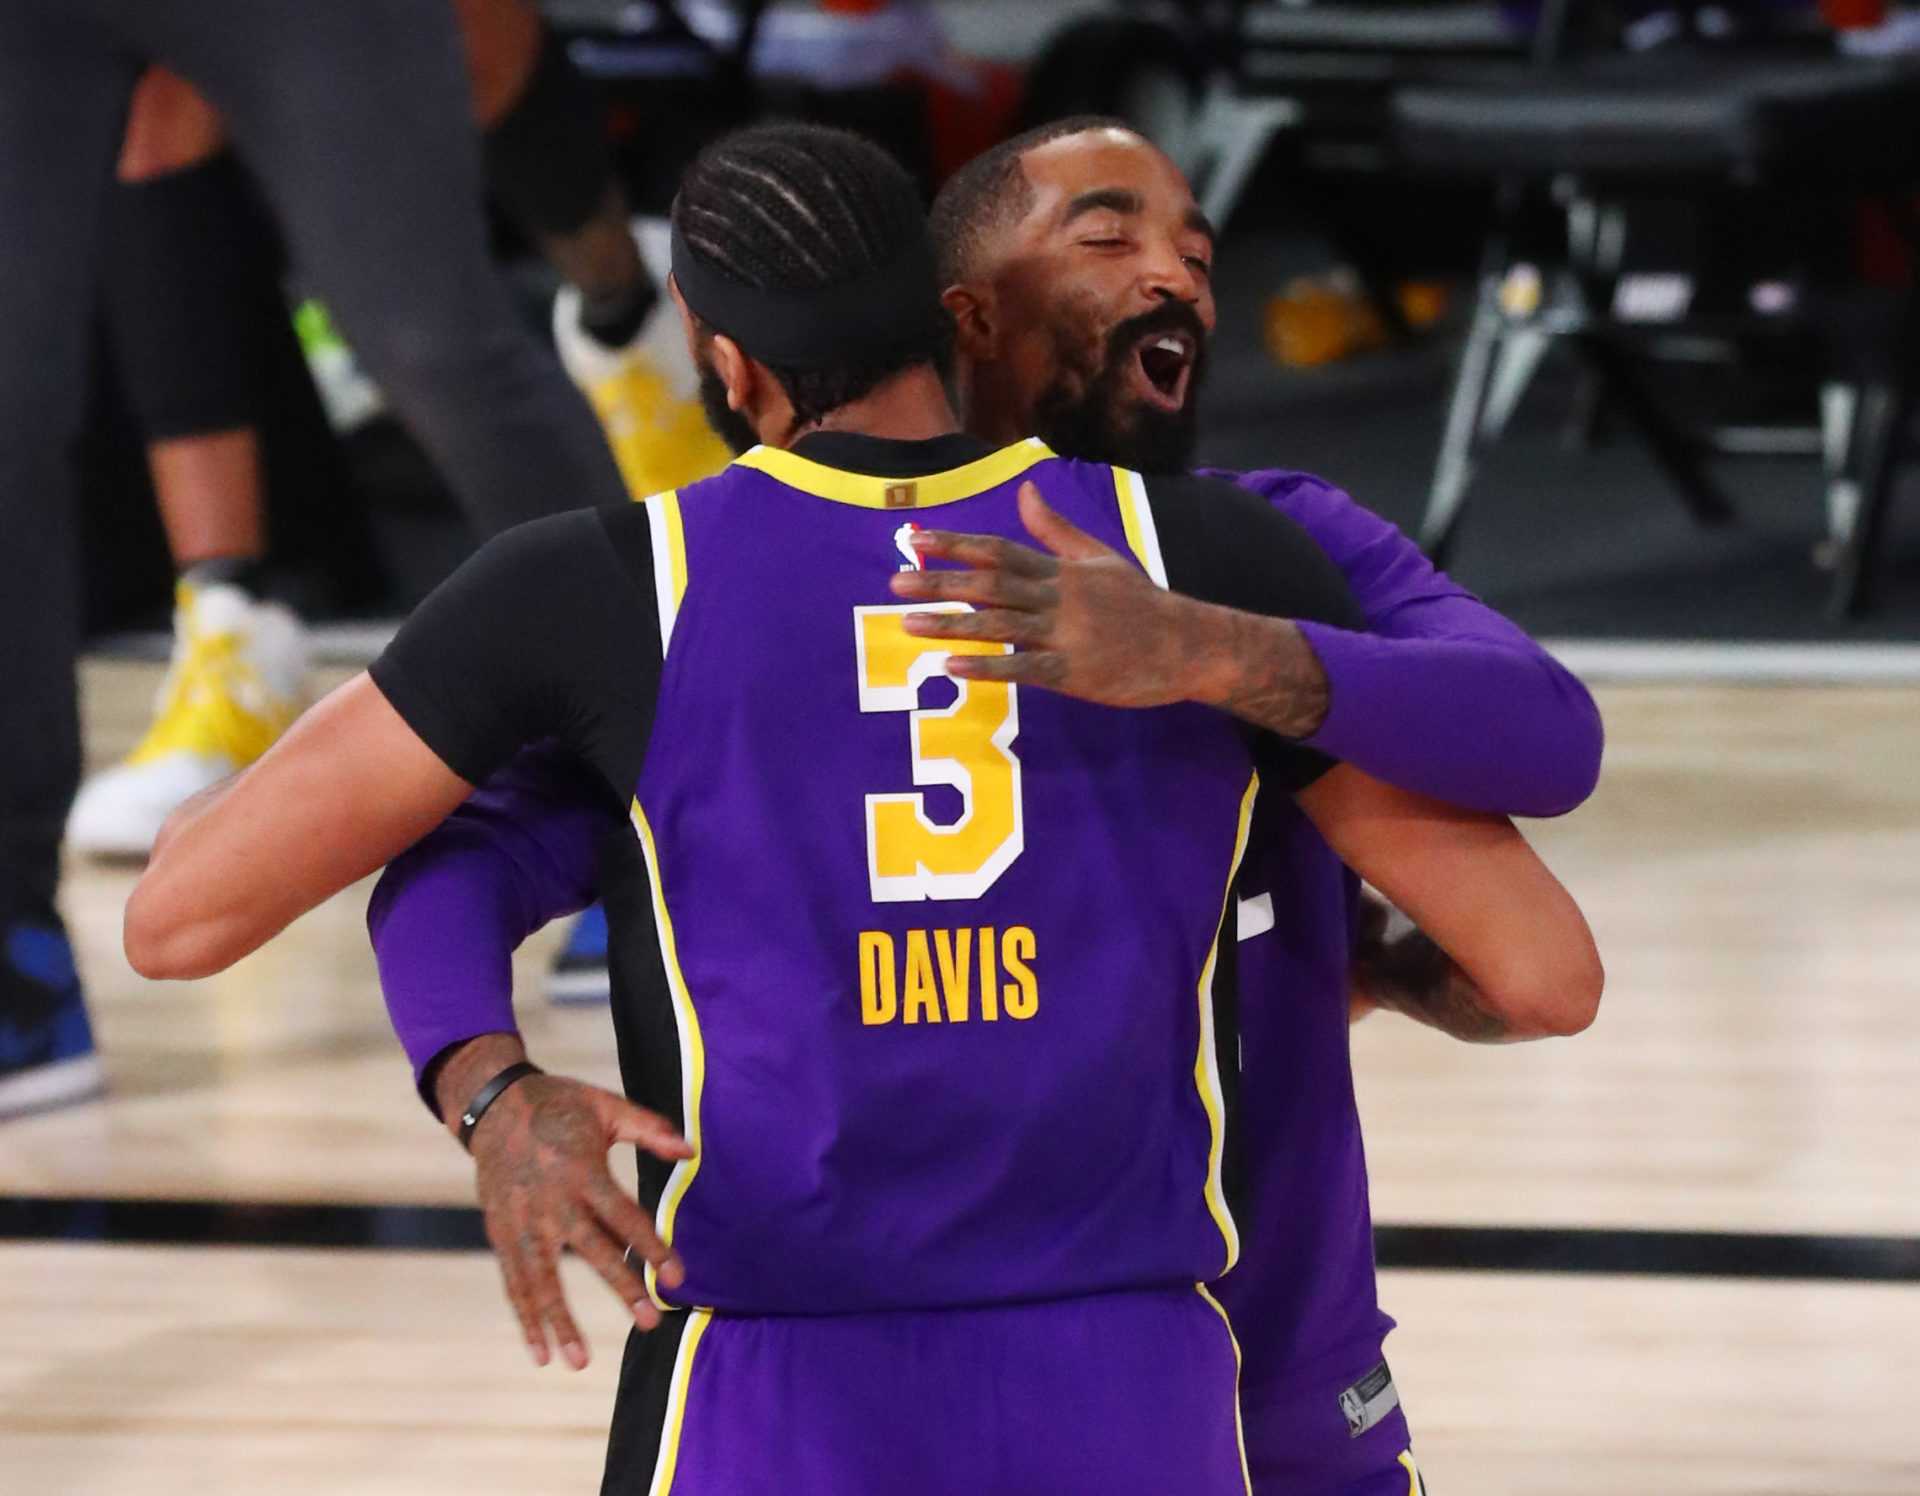 J.R. Smith des Lakers révèle pourquoi il voulait désespérément remporter le titre de champion de la NBA 2020